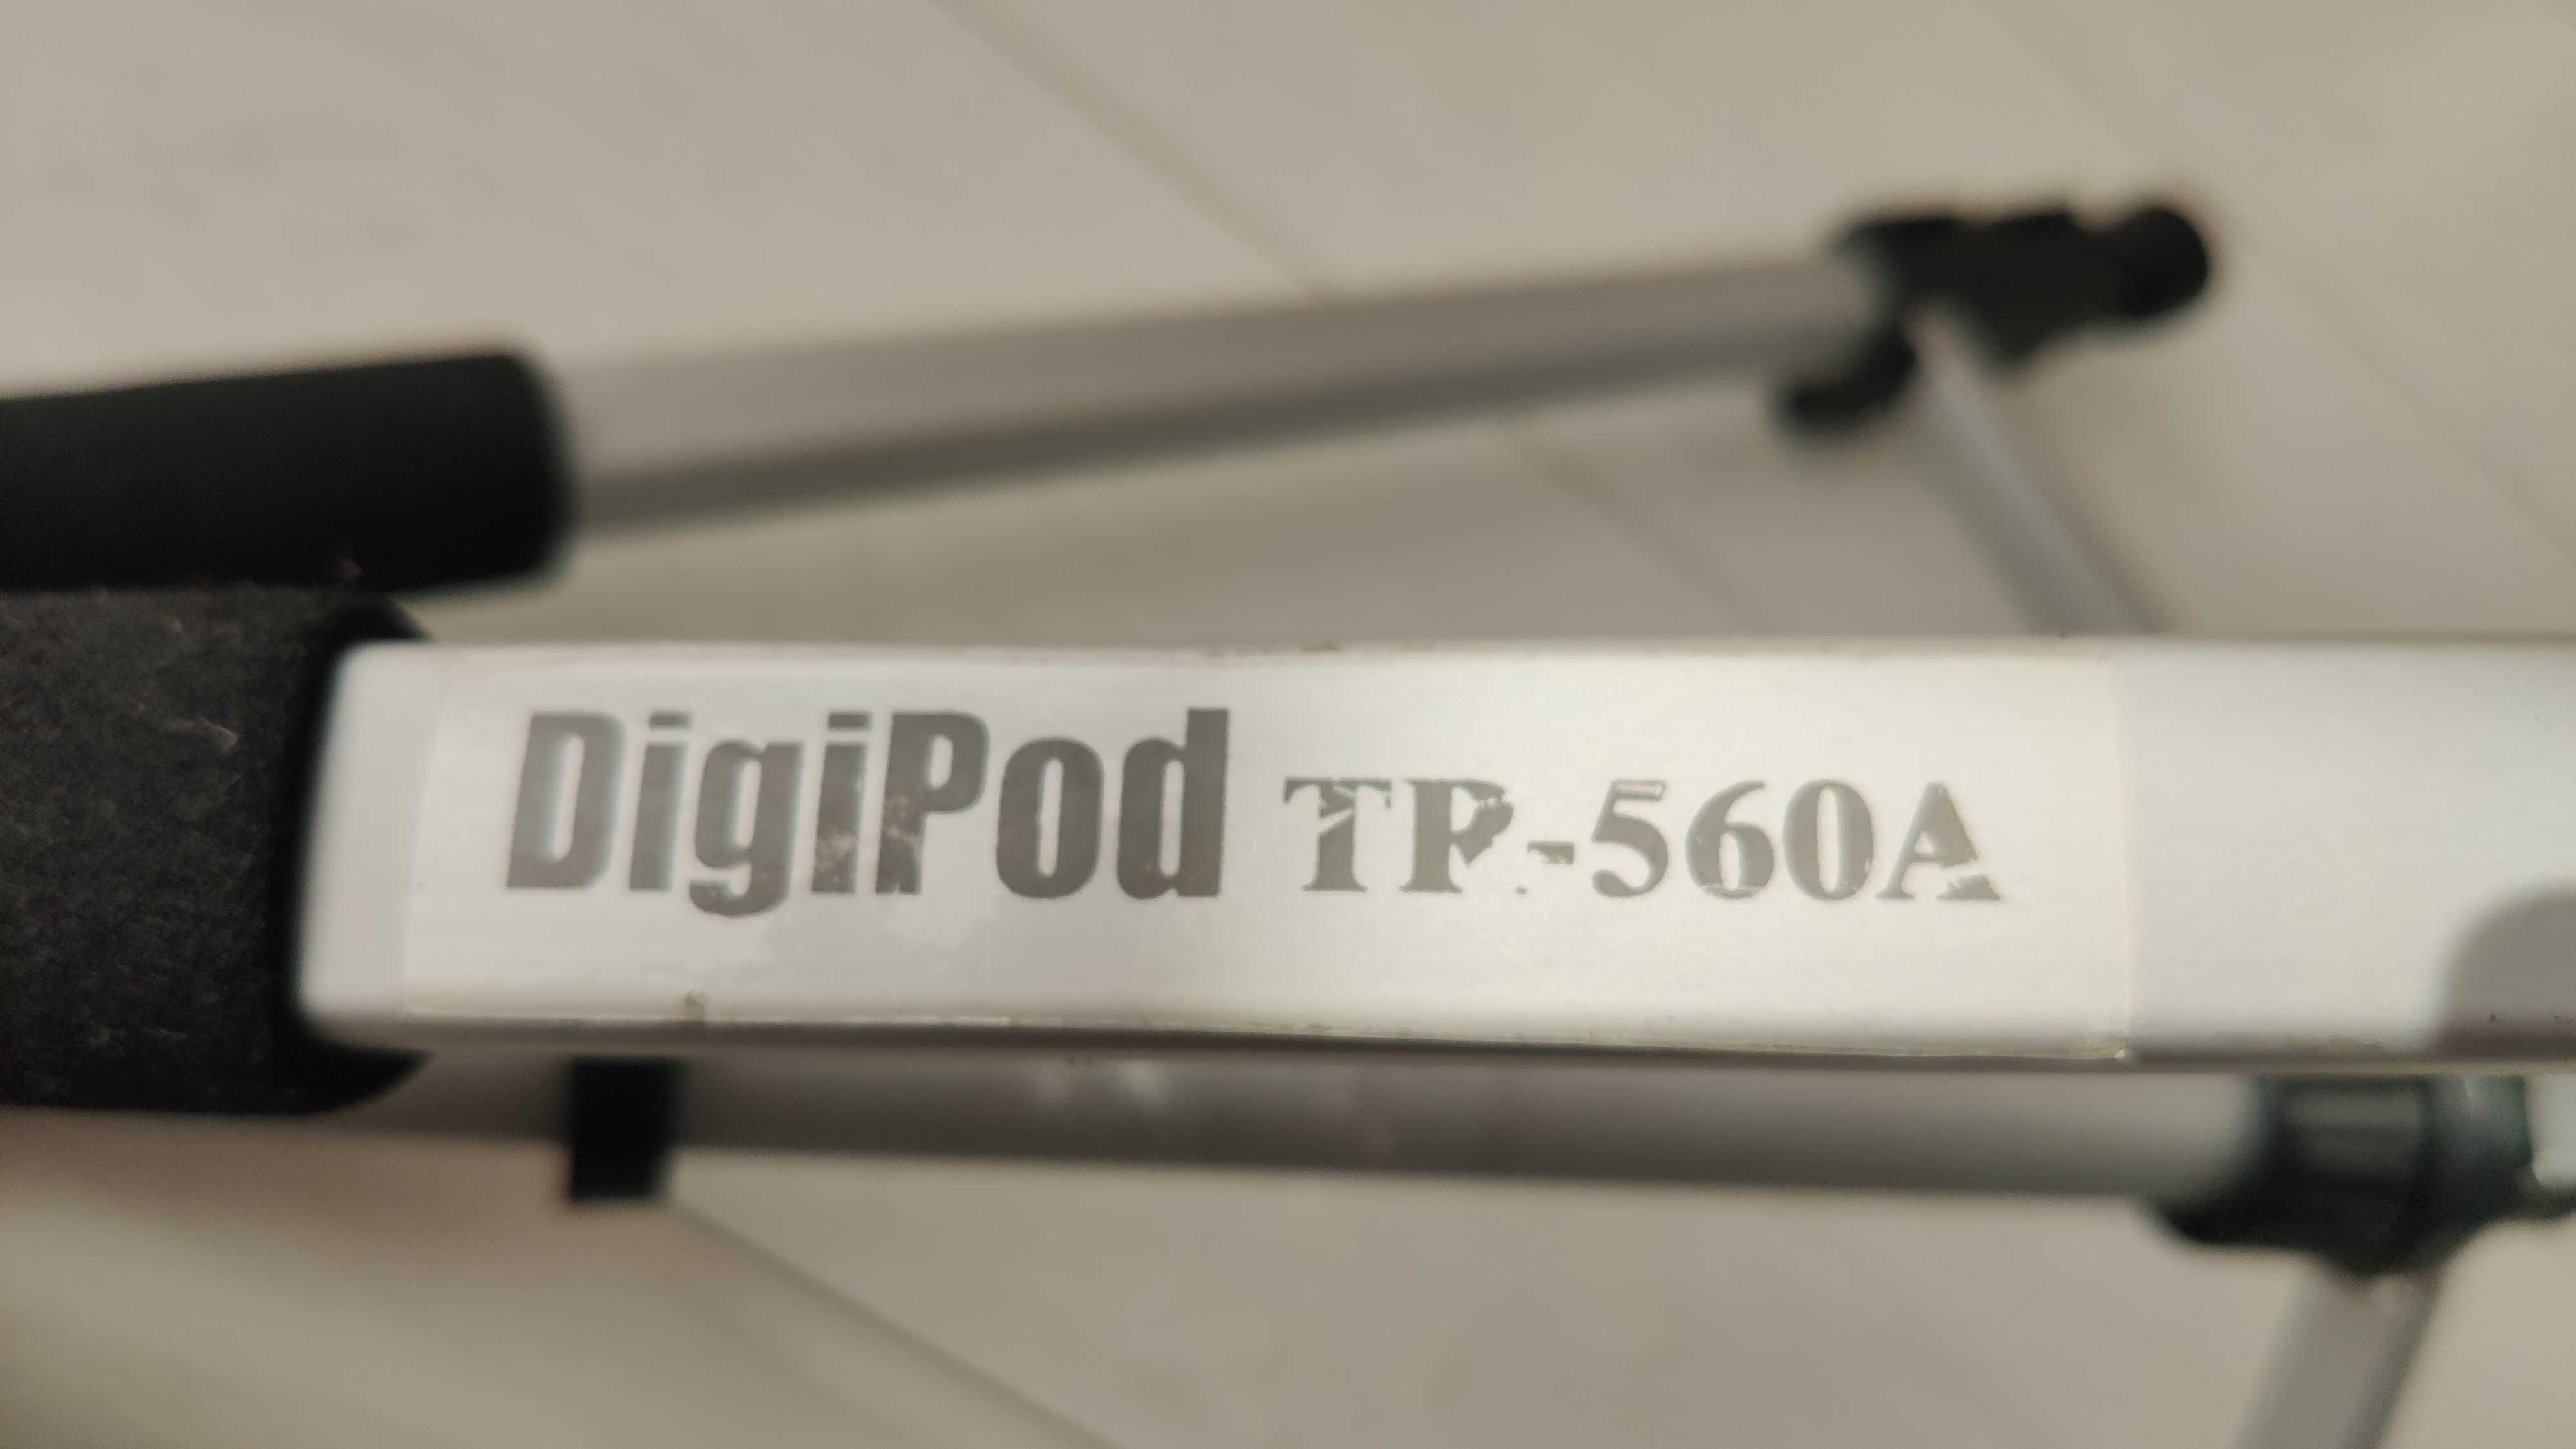 Statyw fotograficzny DigiPod TP-560A